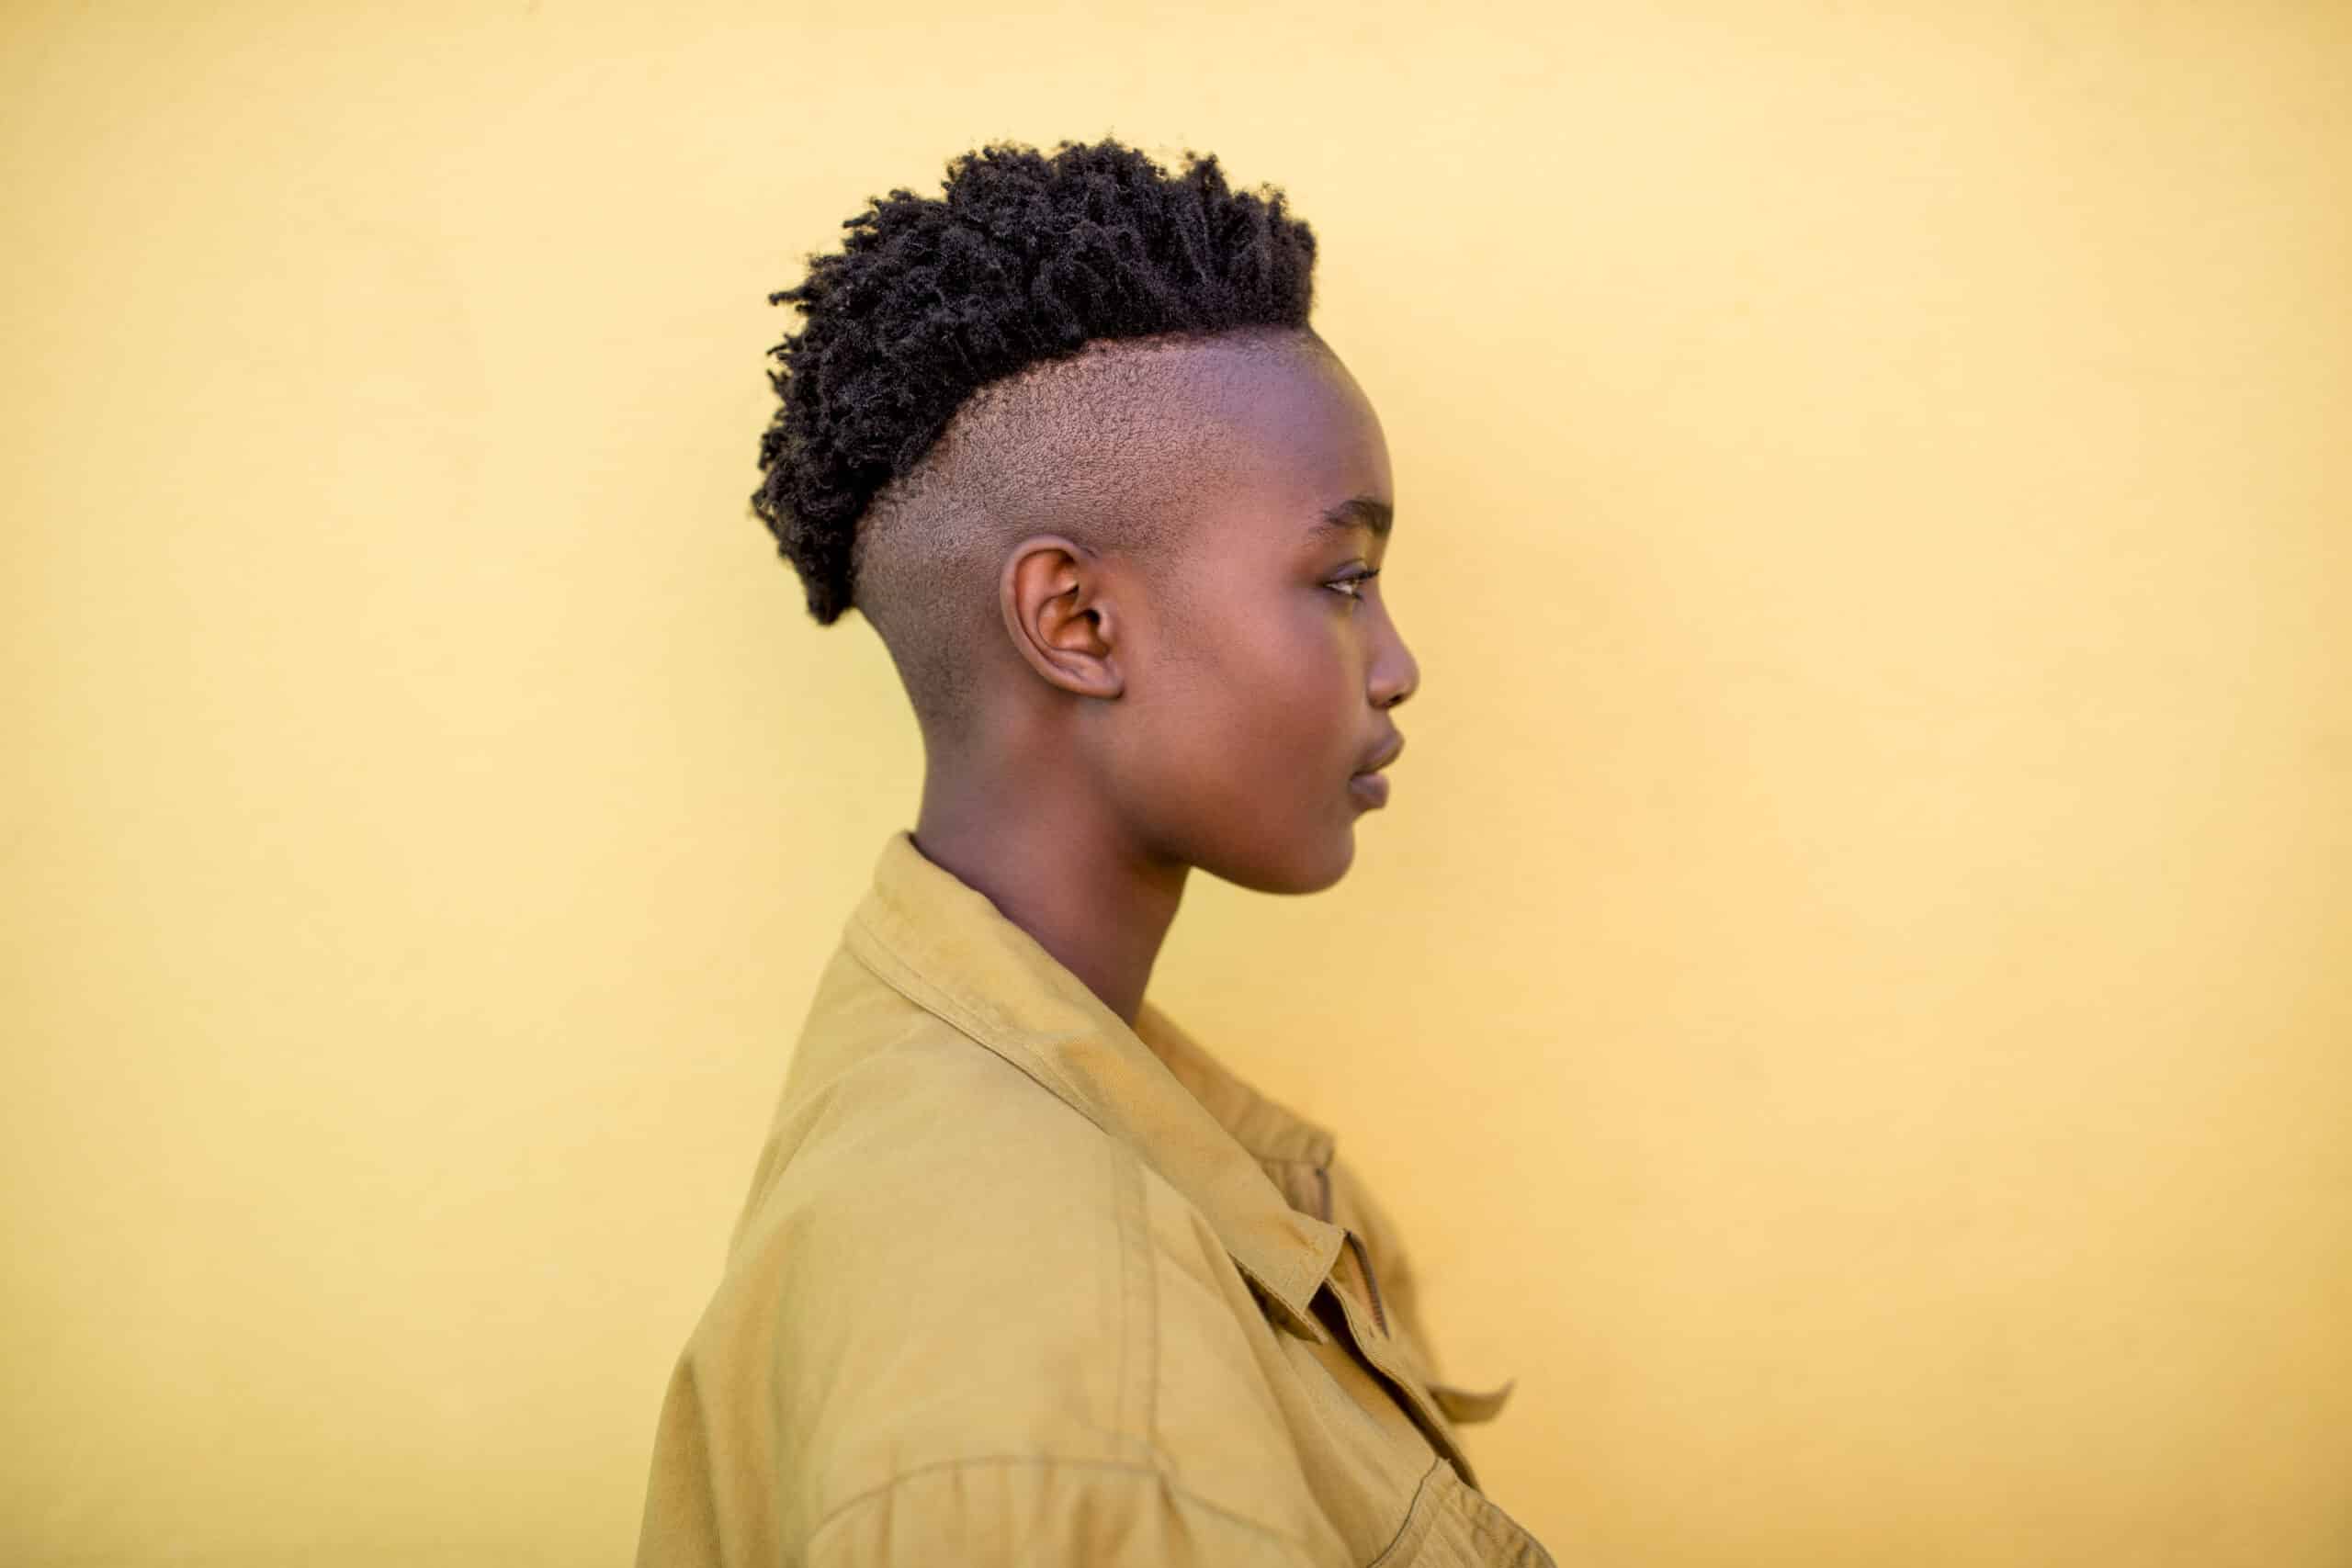 Seitenprofil einer jungen Person mit stylischem, modernem Haarschnitt, die ein beiges Hemd vor einem schlichten gelben Hintergrund trägt. © Fotografie Tomas Rodriguez